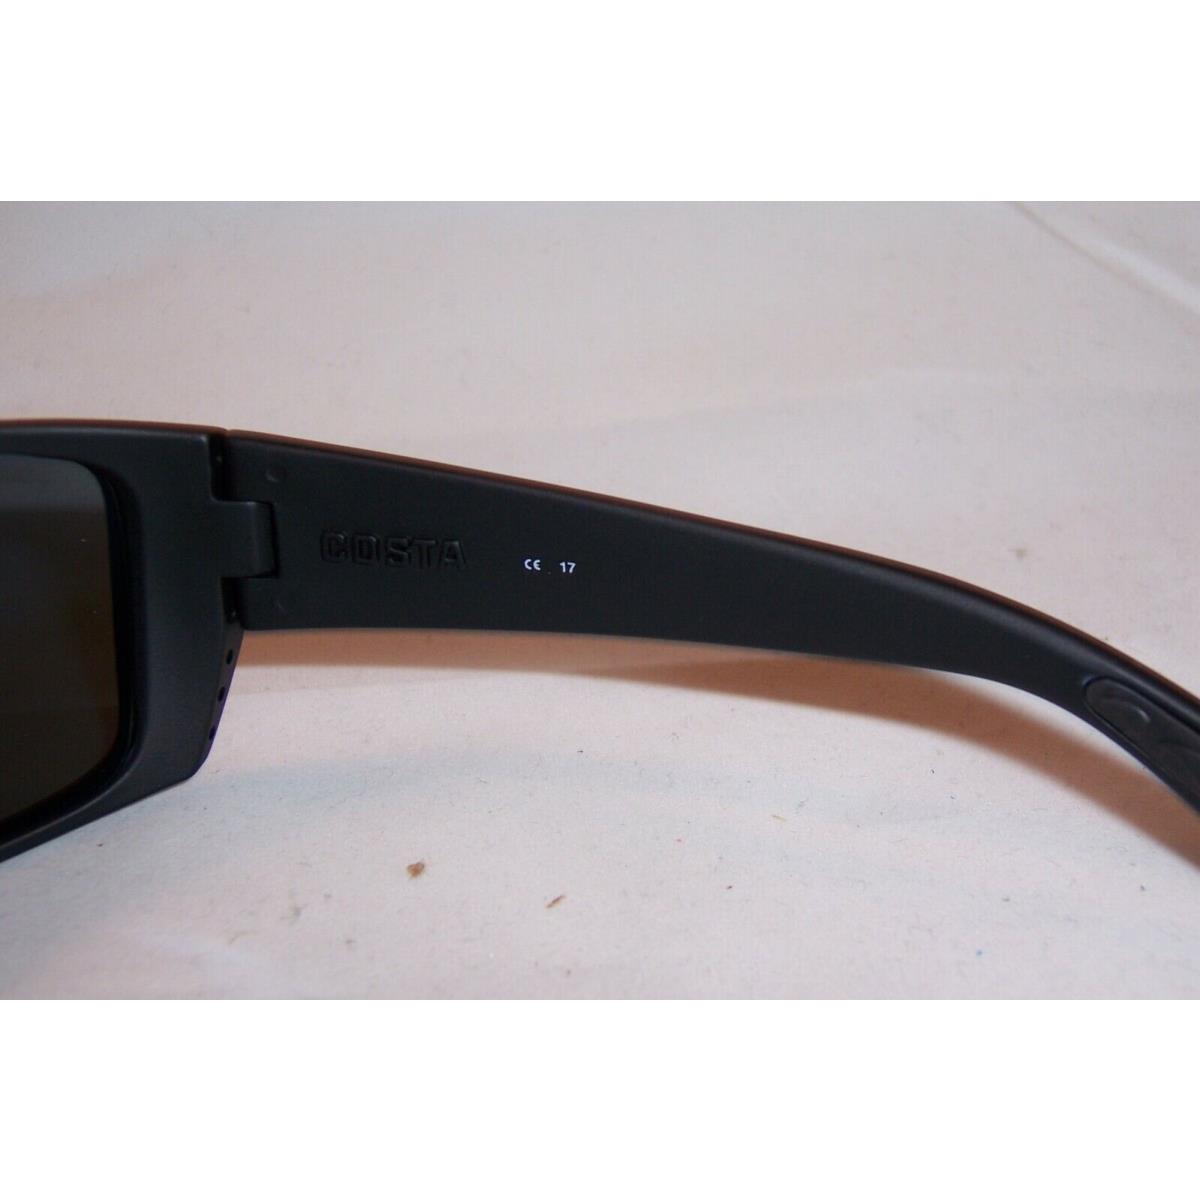 Costa Del Mar sunglasses Cat Cay - Black Frame, Blue Lens 6